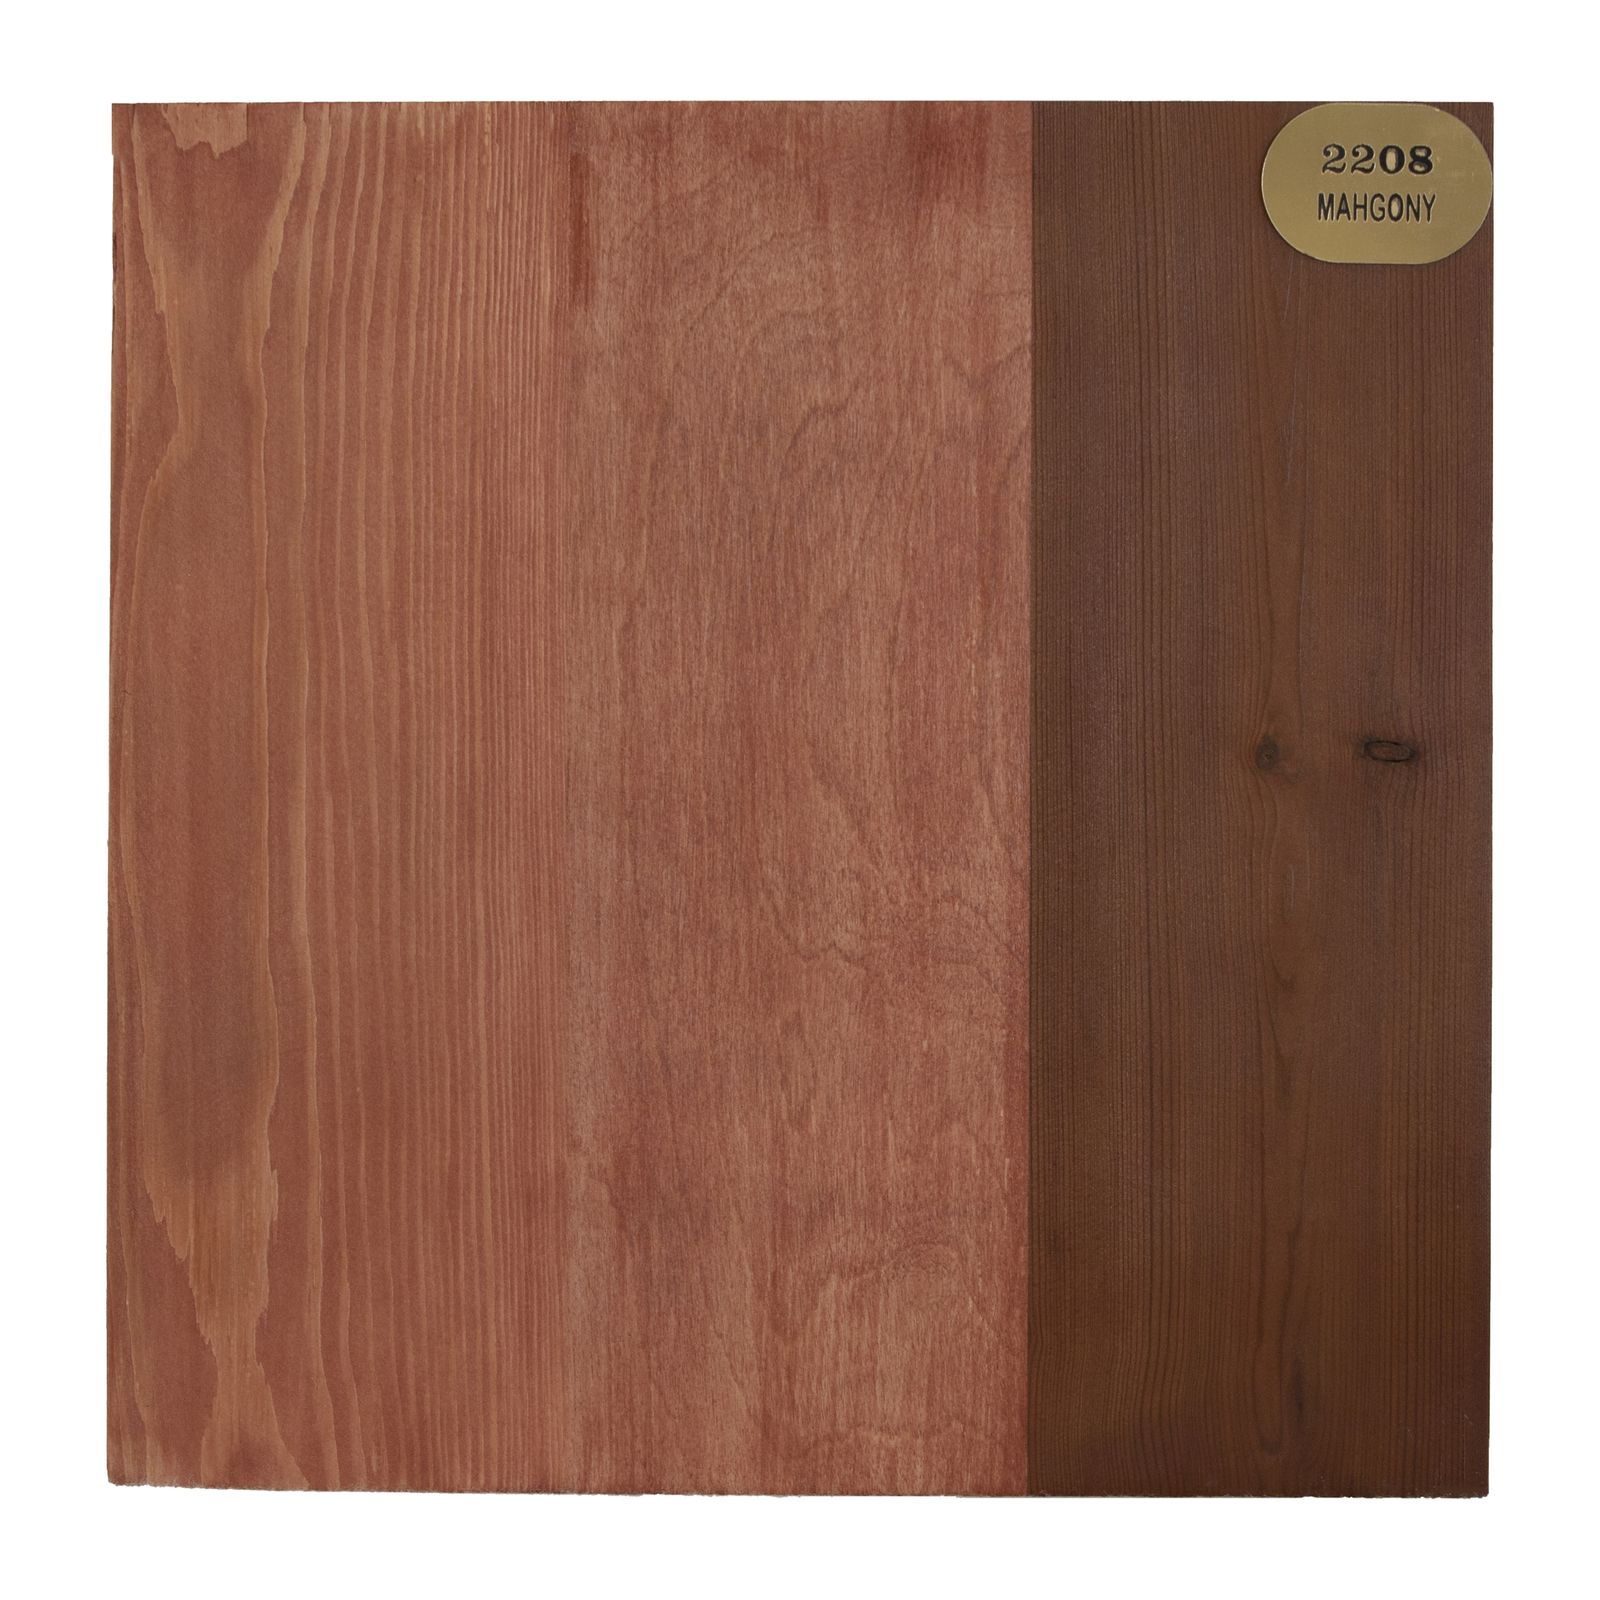 قیمت و خرید رنگ چوب ماهگونی روم آرت کد 2208 حجم 1 لیتر